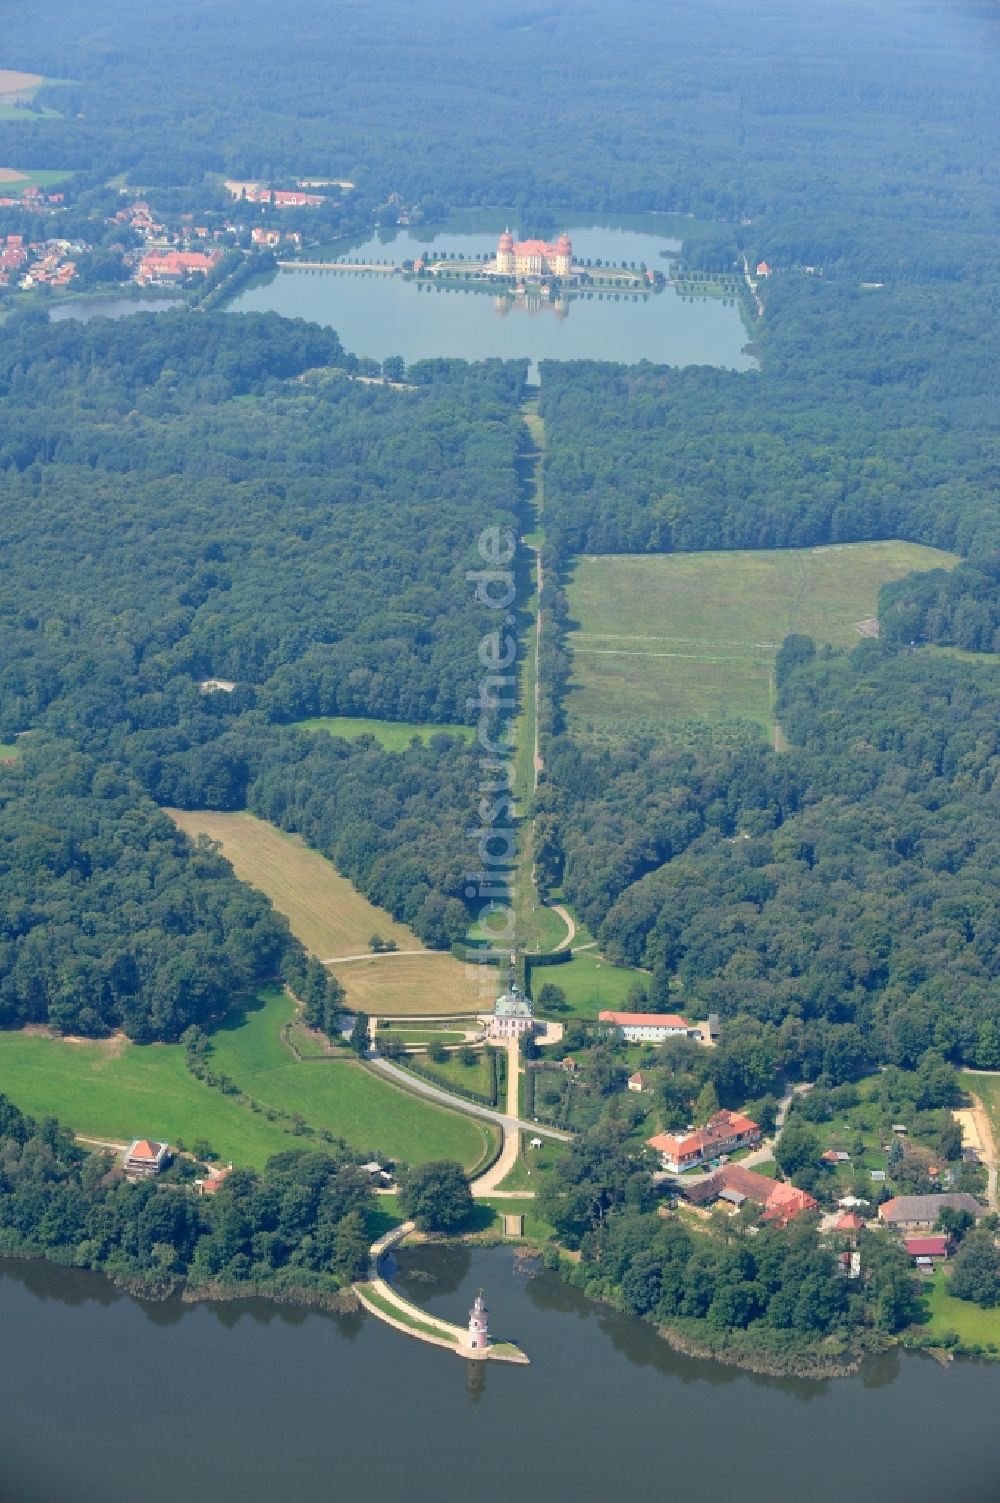 Luftaufnahme Moritzburg - Blick auf das Jagdschloss Moritzburg und das Fasanenschlösschen am Schlossteich in der gleichnamigen Gemeinde im Bundesland Sachsen.